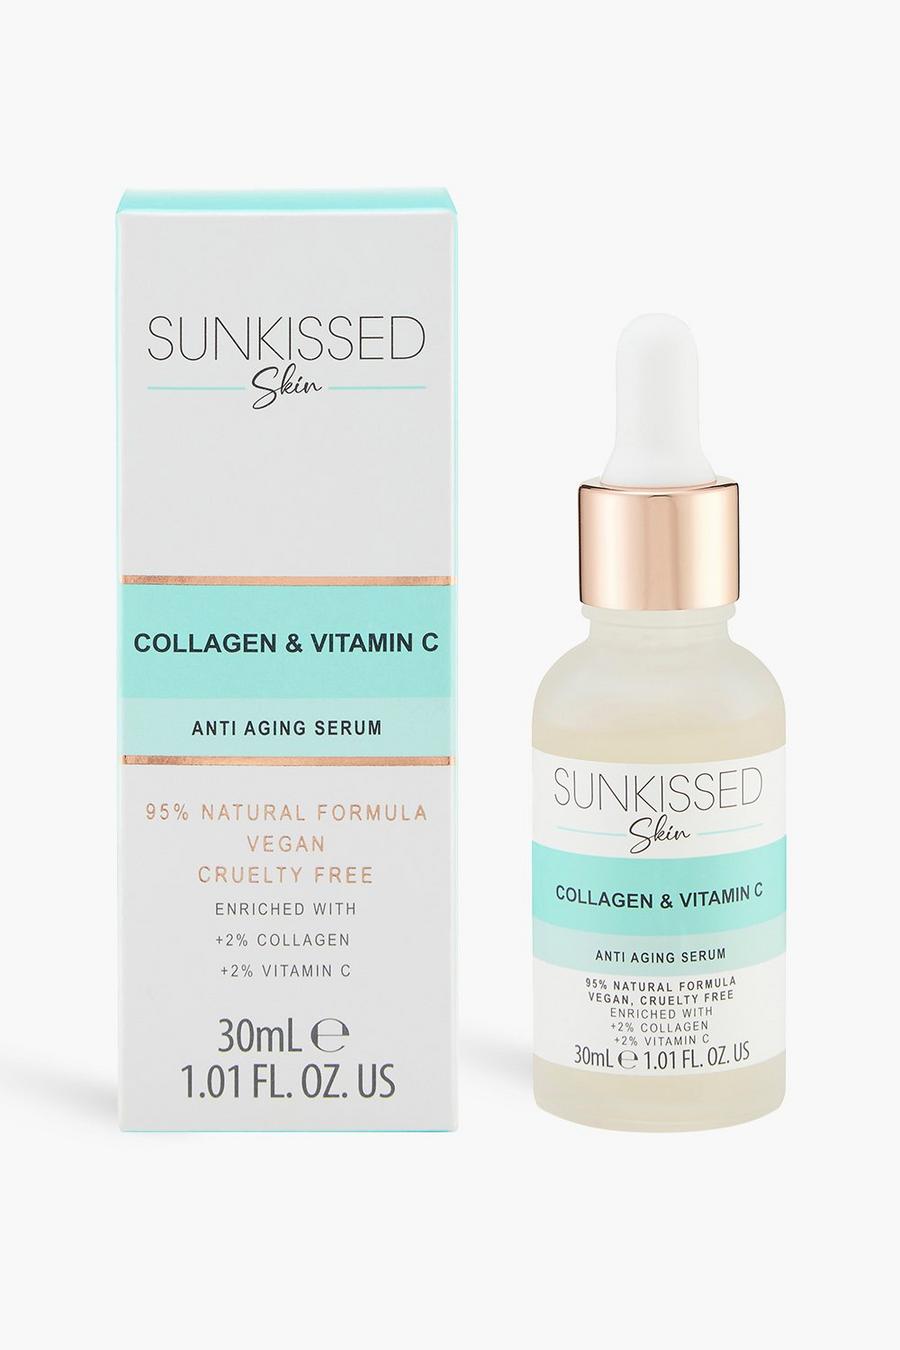 Blue Sunkissed Skin Collagen & Vitamin C Serum